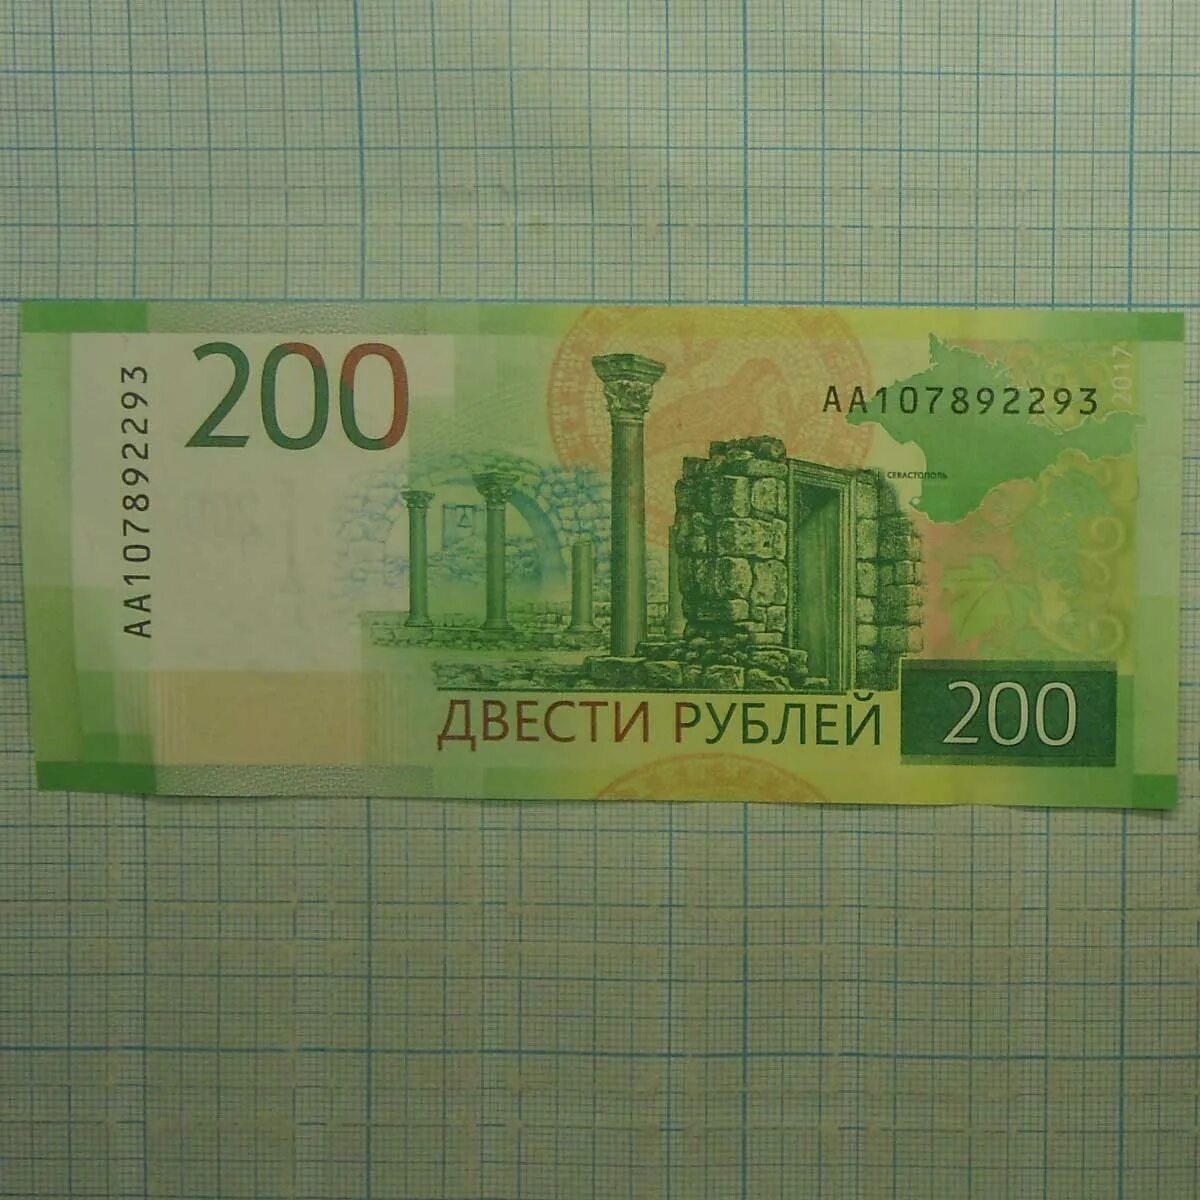 22 200 в рублях. 200 Рублей. Купюра 200 рублей. 200 Рублей банкнота. 200 Рублей 2017.